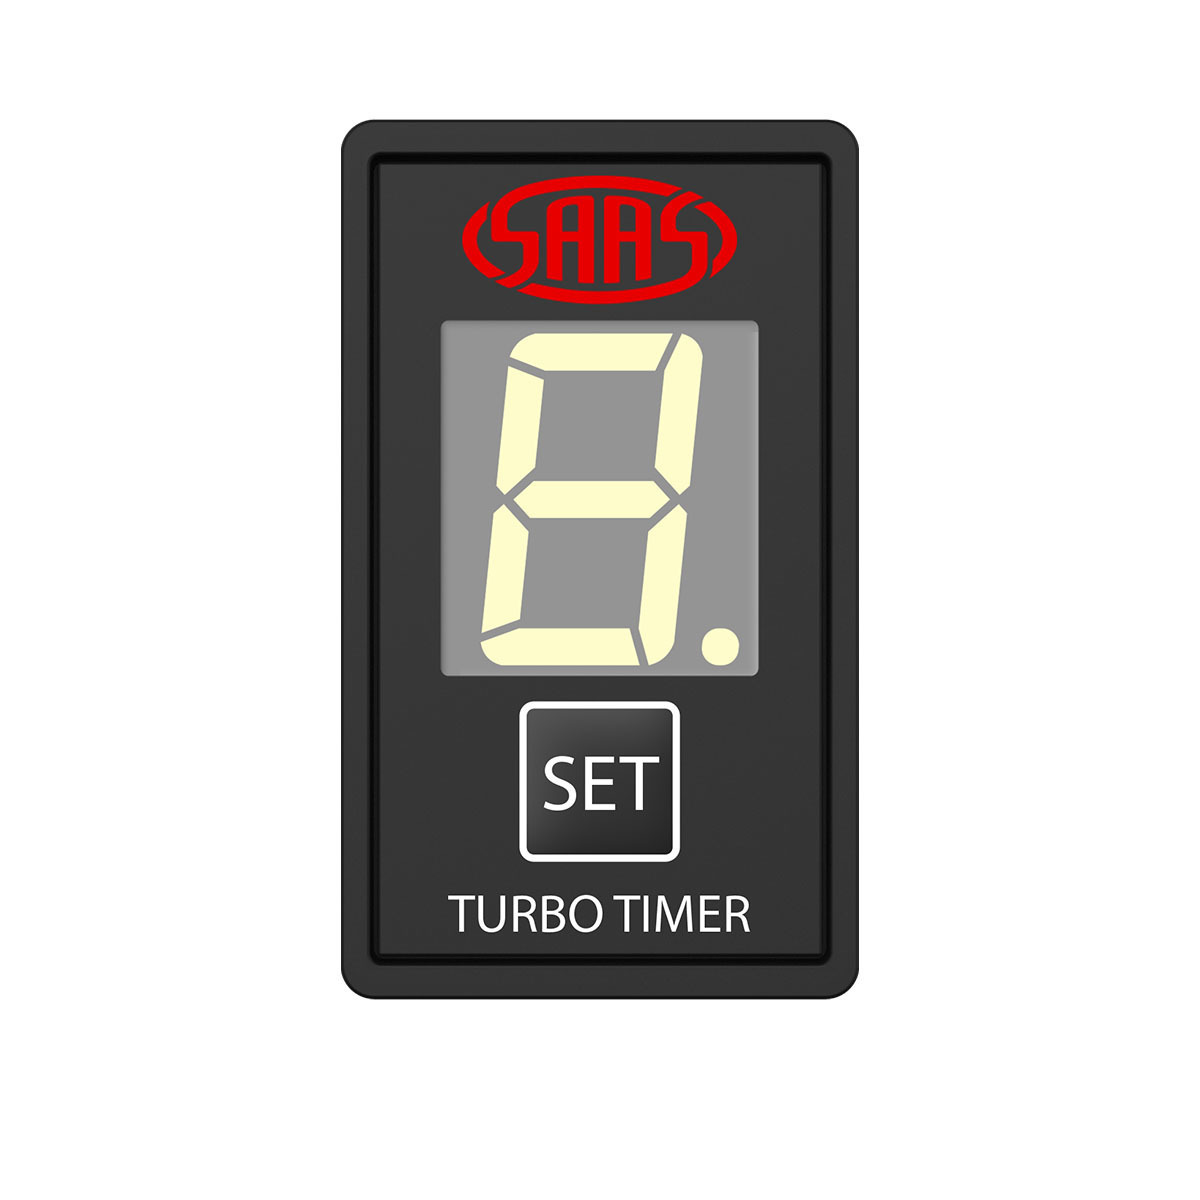 Turbo Timer Digital Switch Gauge Auto Toyota 40 x 20